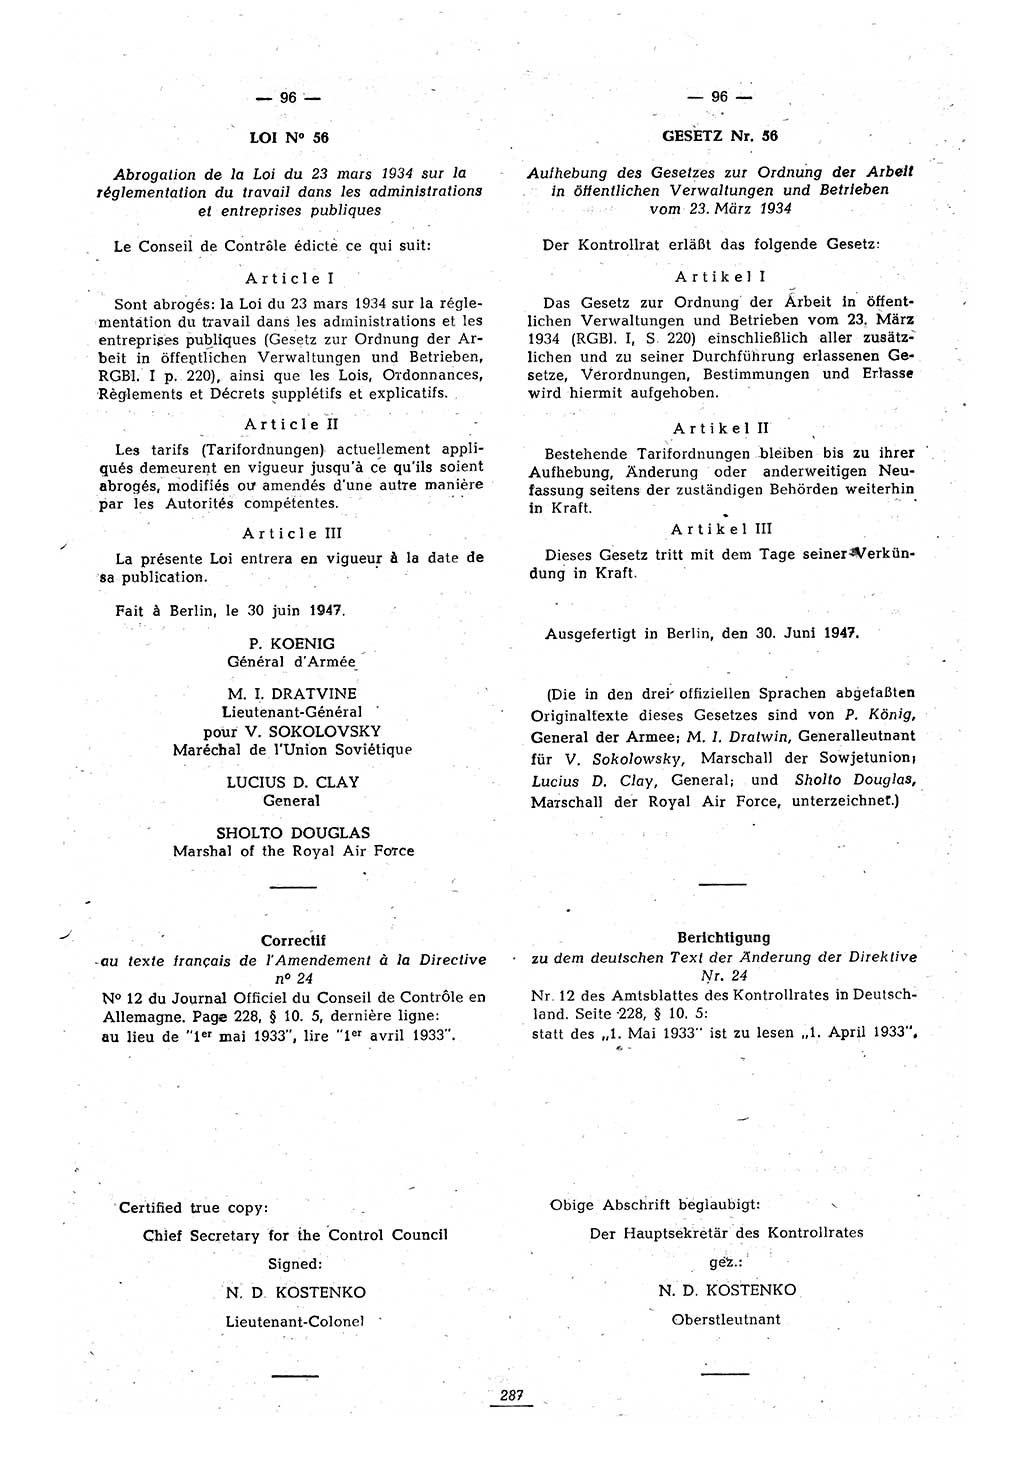 Amtsblatt des Kontrollrats (ABlKR) in Deutschland 1947, Seite 287/2 (ABlKR Dtl. 1947, S. 287/2)